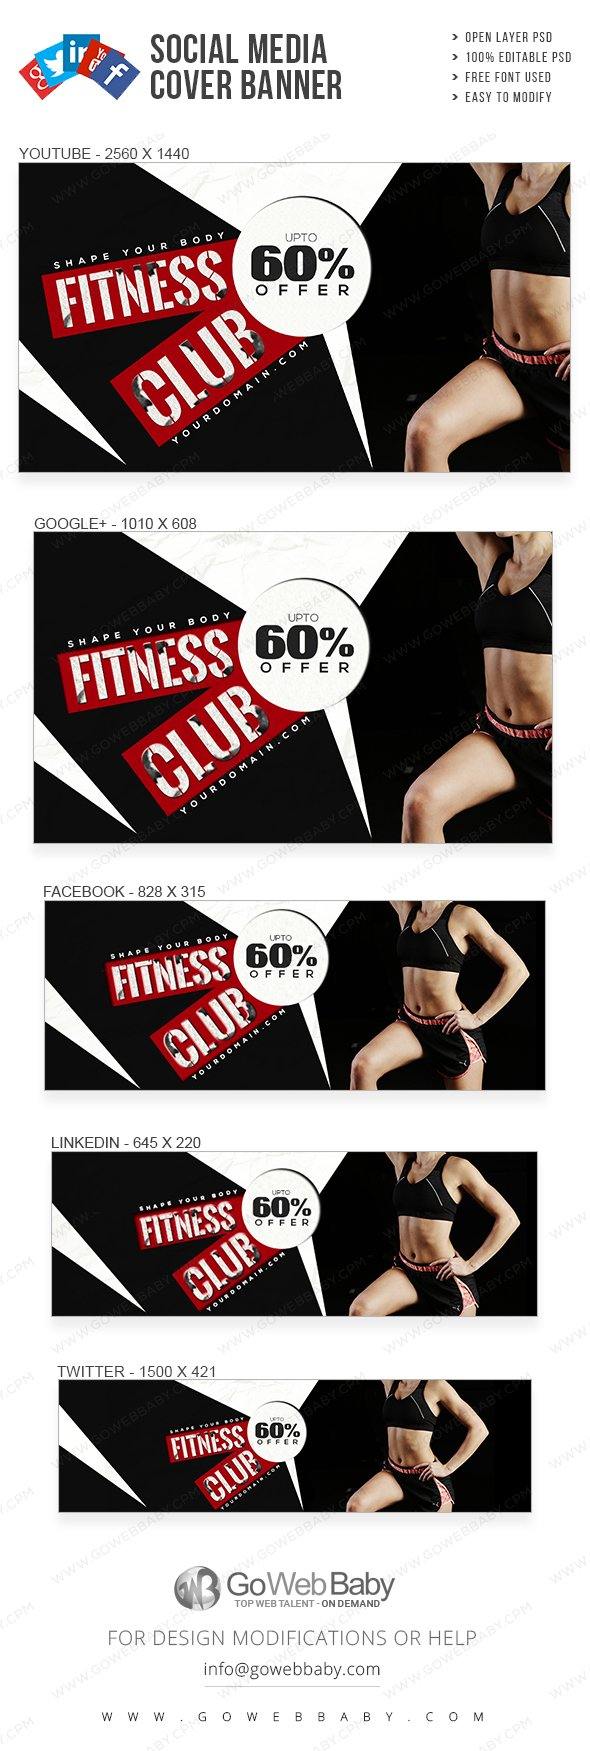 Social Media Cover Banner - Women's Fitness For Website Marketing - GoWebBaby.Com